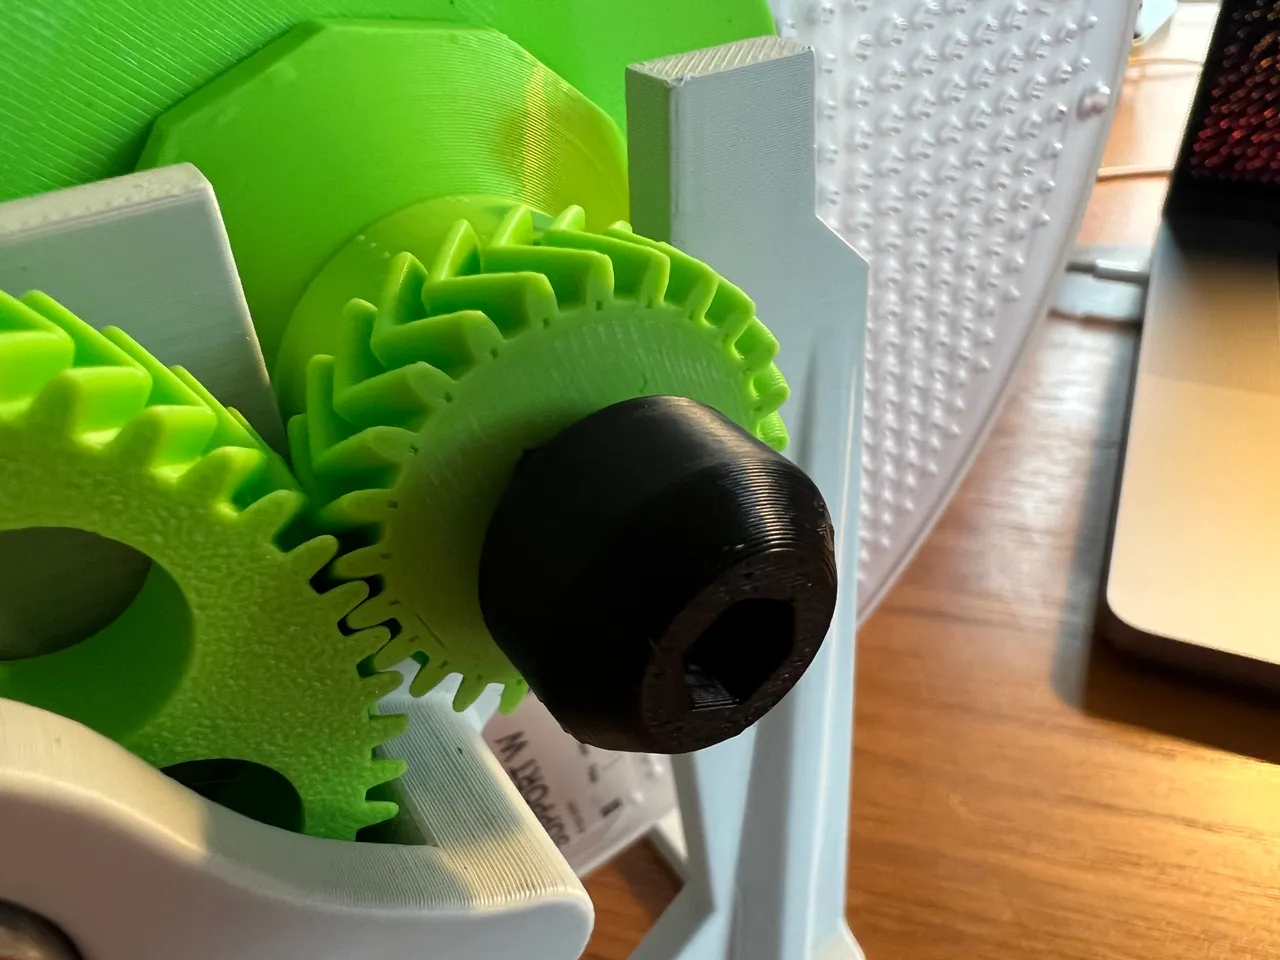 Filament Spool Reel Wind #3Dprinting #3DThursday « Adafruit